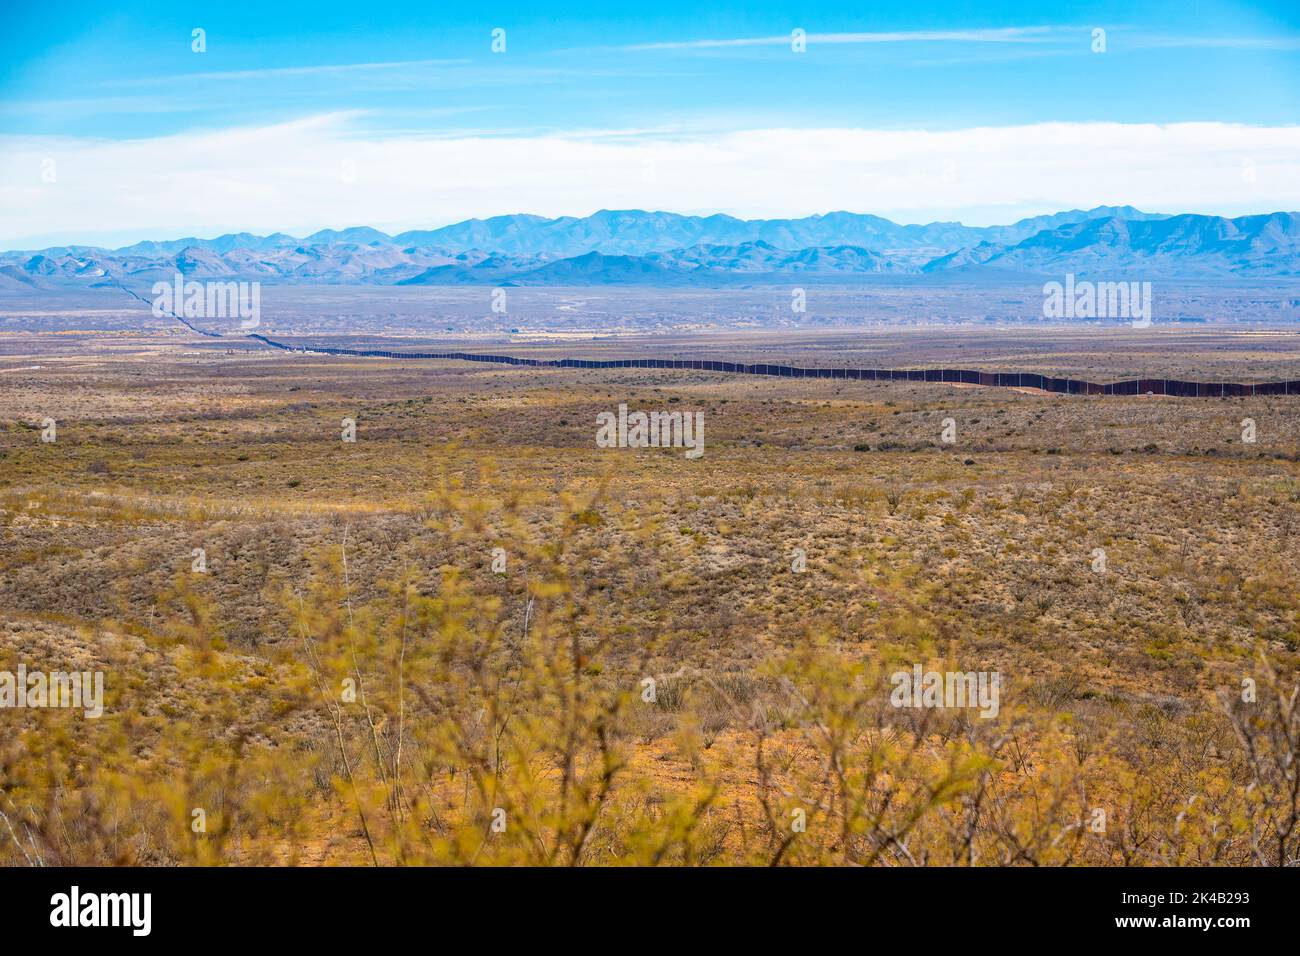 Kürzlich wurden am 14. Dezember 2020 Paneele beim neuen Grenzwandsystem-Projekt östlich von Douglas, Arizona, errichtet. Das Grenzwandsystem umfasst eine Kombination von Infrastruktur einschließlich neuer Allwetterzugangsstraßen. Foto von Jerry Glaser. Stockfoto